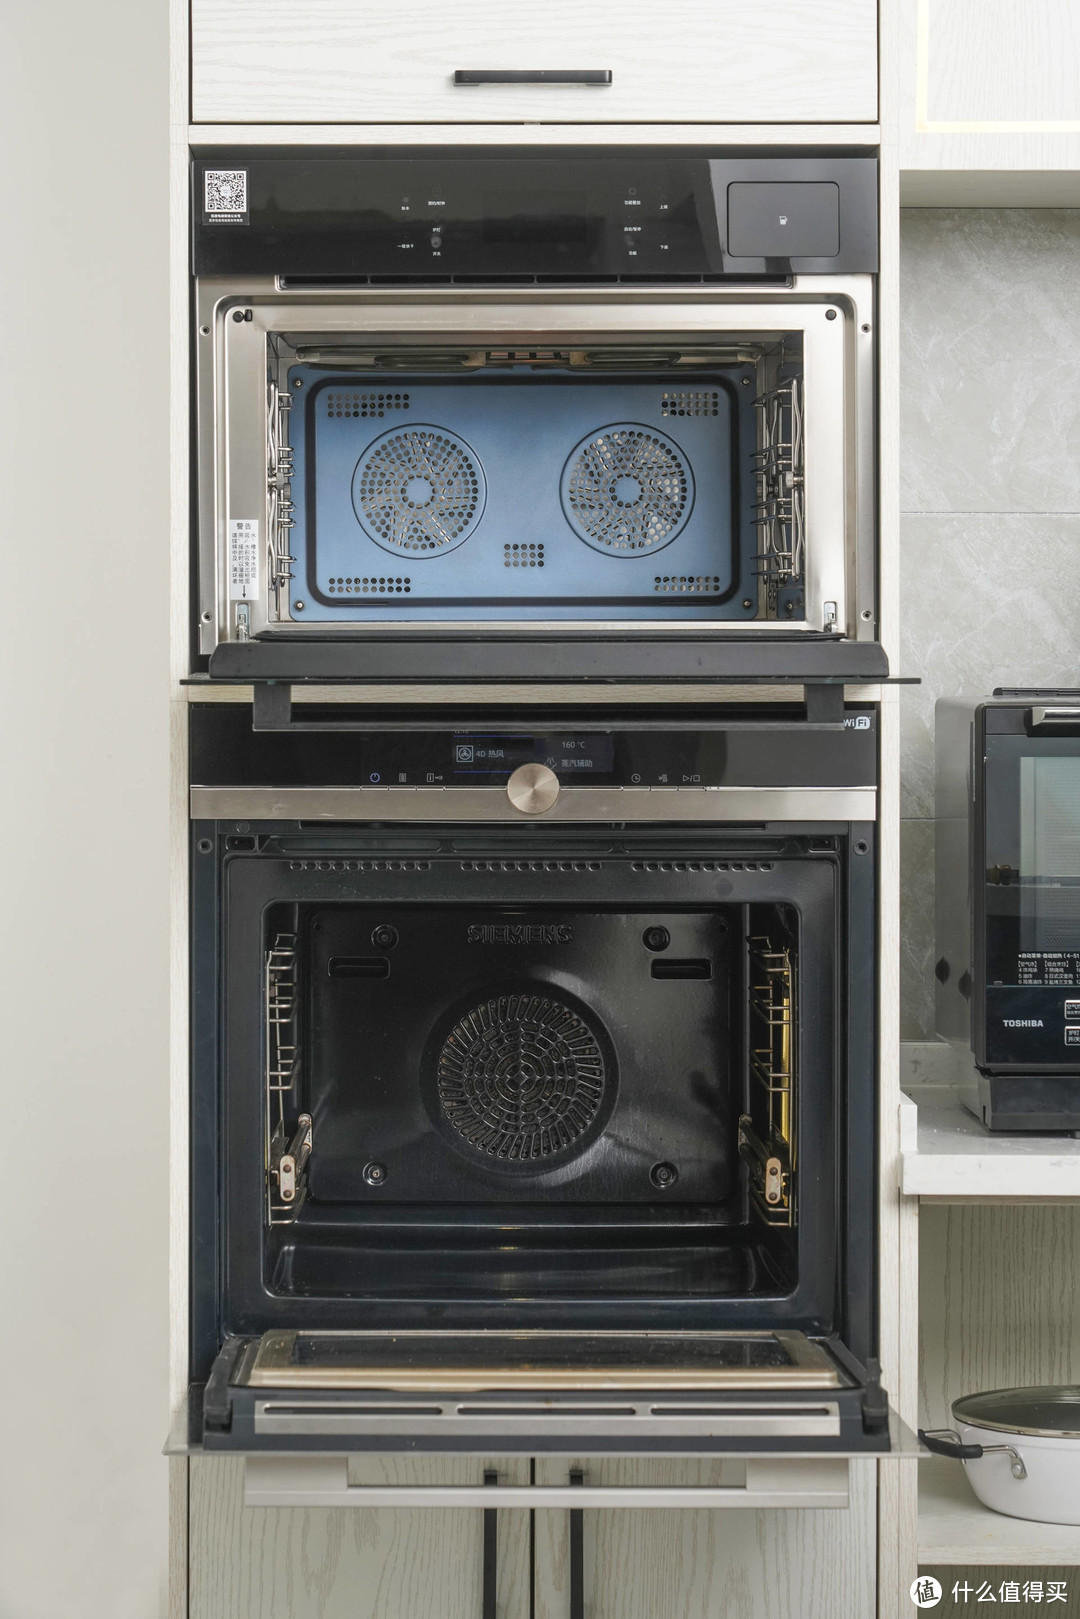 跨越时空的对决-3万6西门子老旗舰蒸汽烤箱对比3600元凯度家用蒸烤箱，看这些年烤箱的变革之路